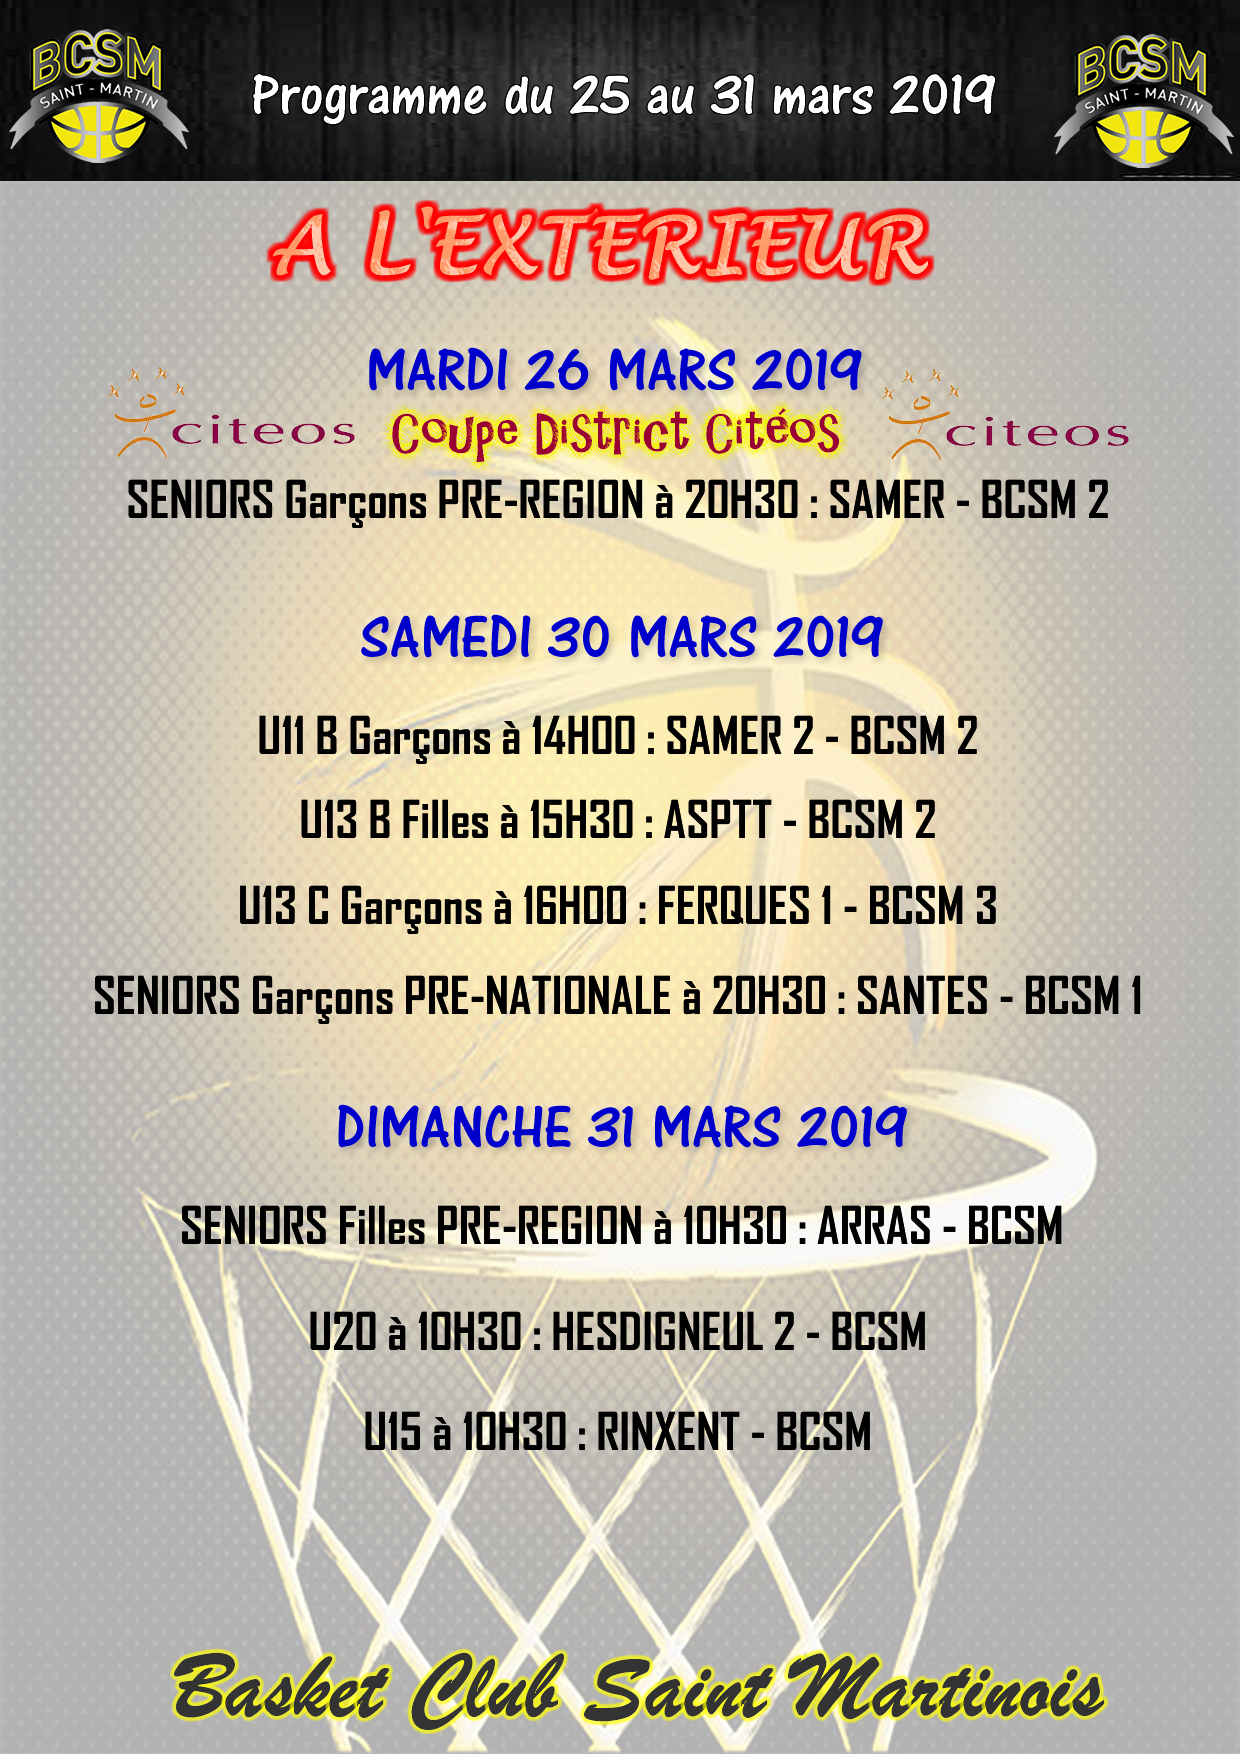 PROGRAMME BCSM DU 25 AU 31 MARS 2019 A L'EXTERIEUR.png